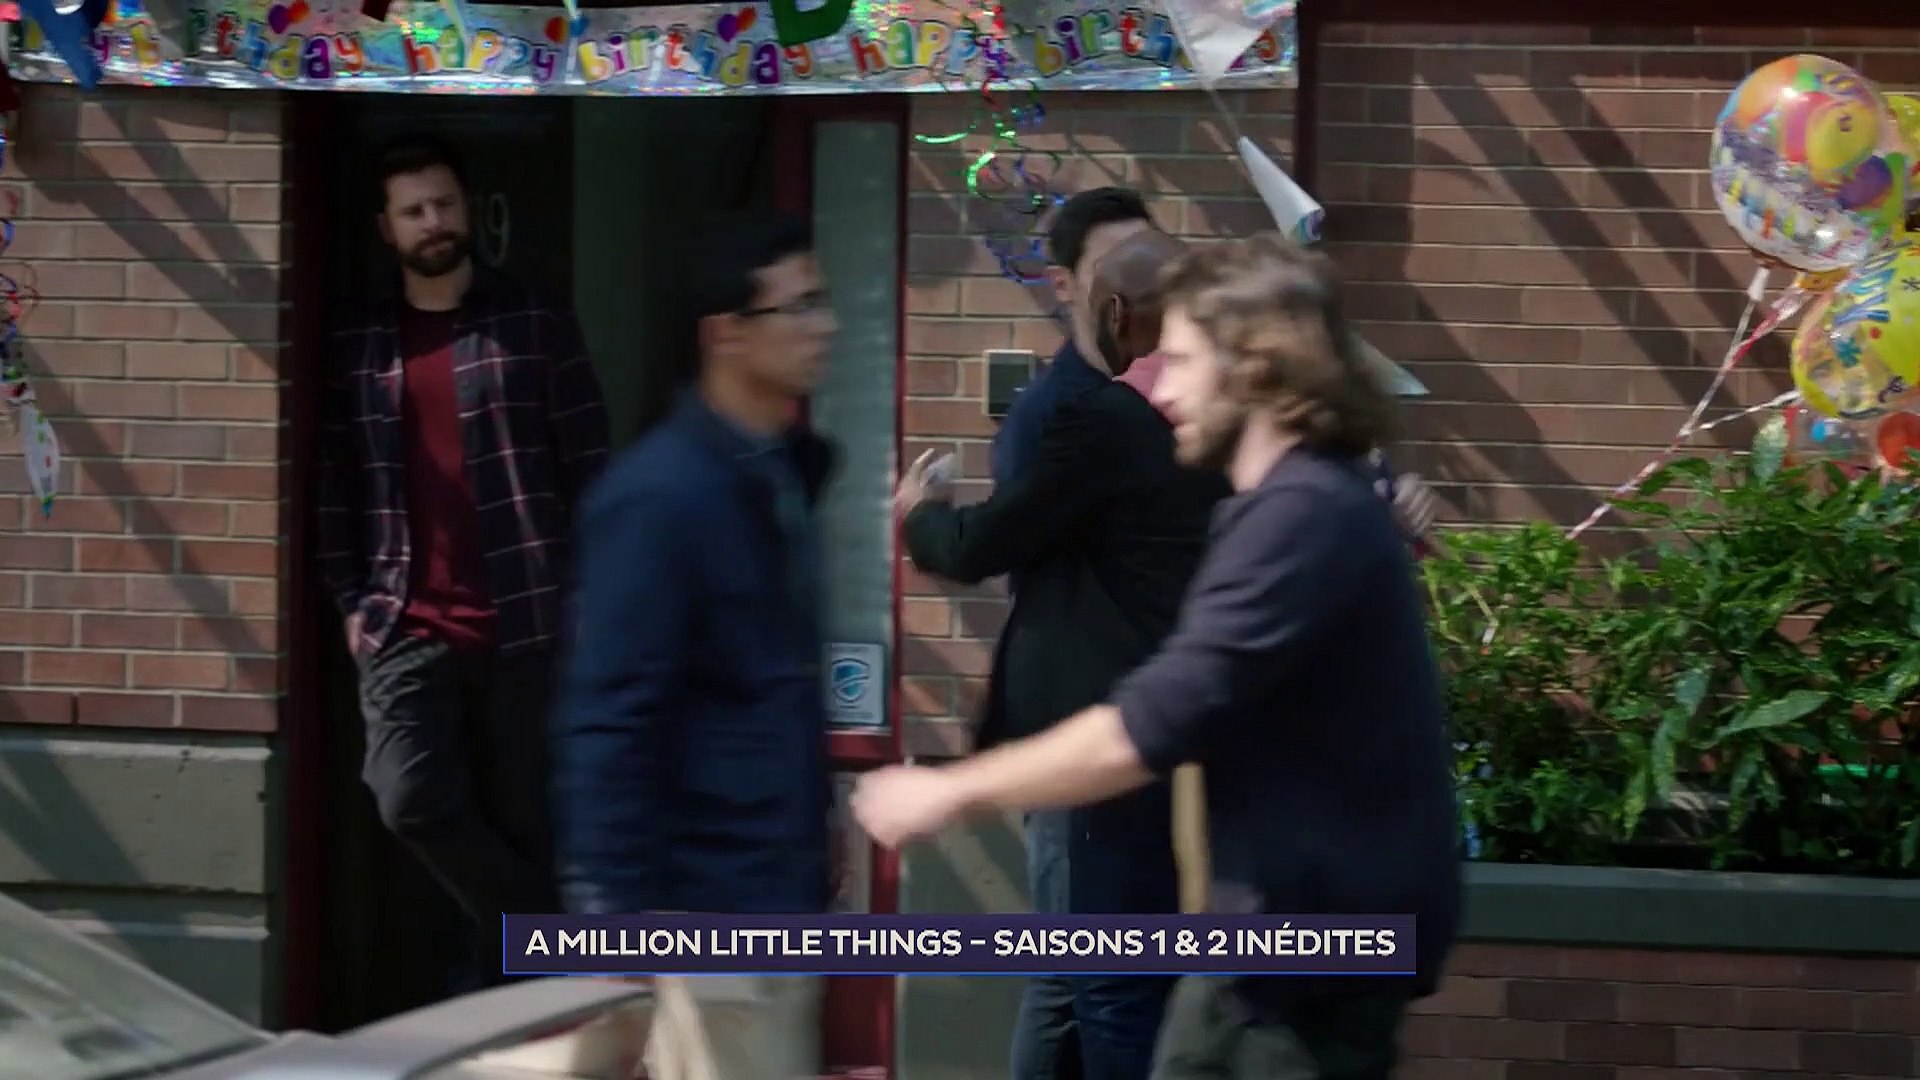 Bande annonce de la série "A Million Little Things" - Vidéo Dailymotion